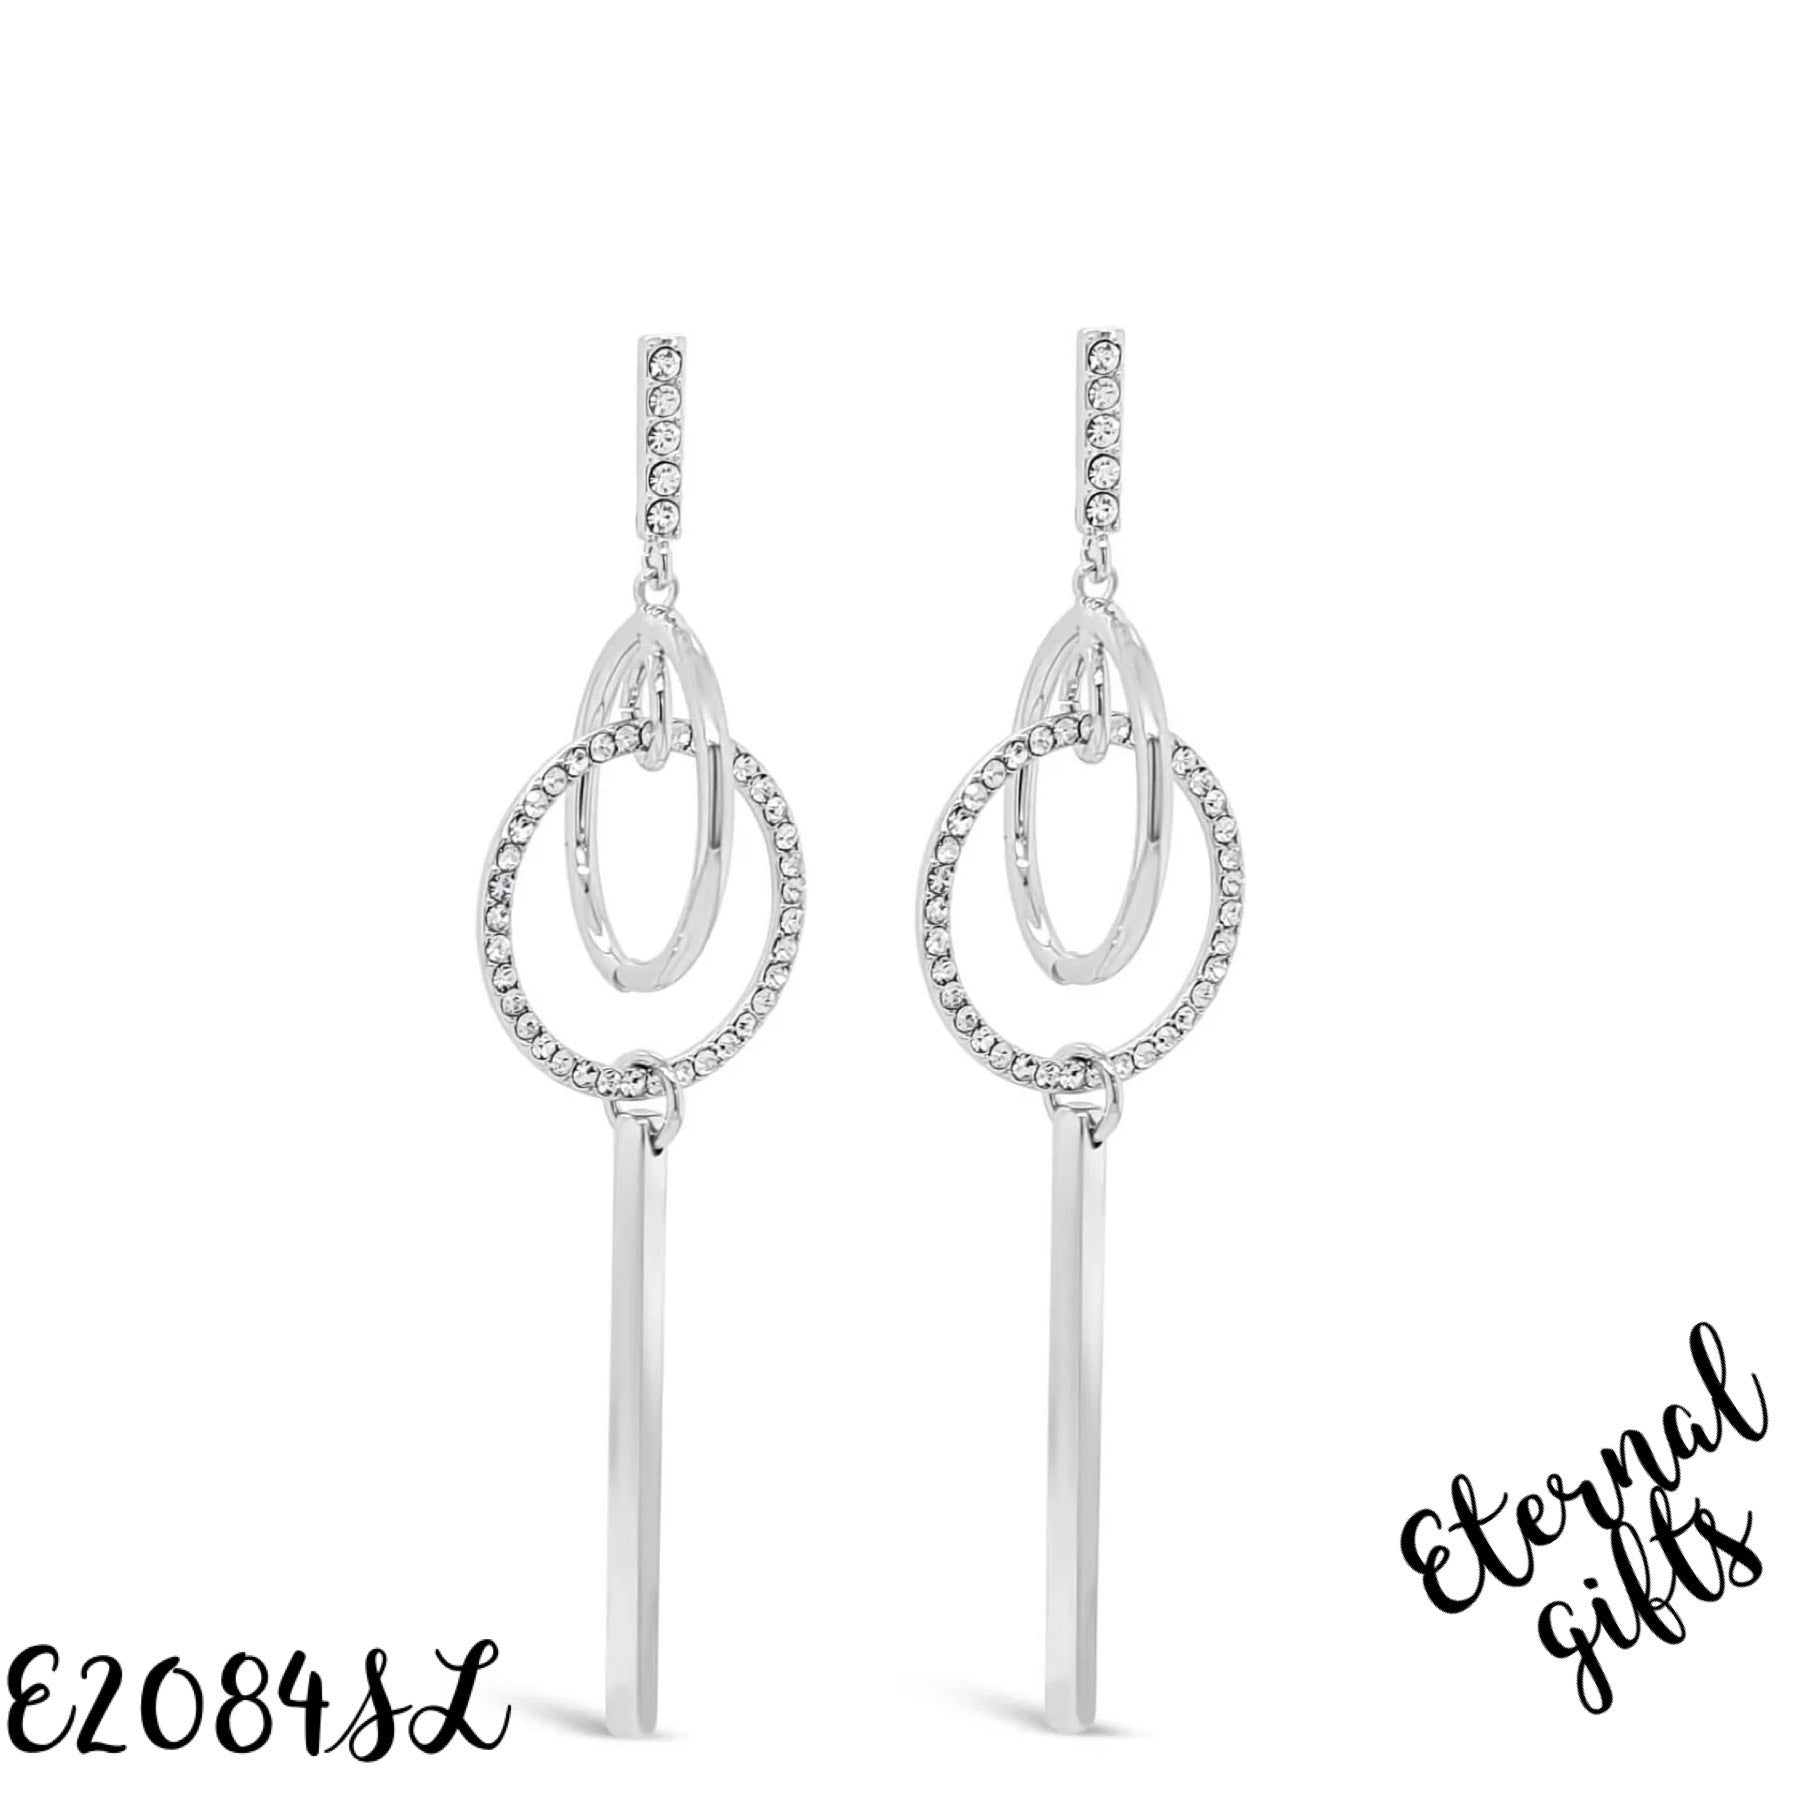 Long crystal swirl earrings E2084SL - Absolute Jewellery